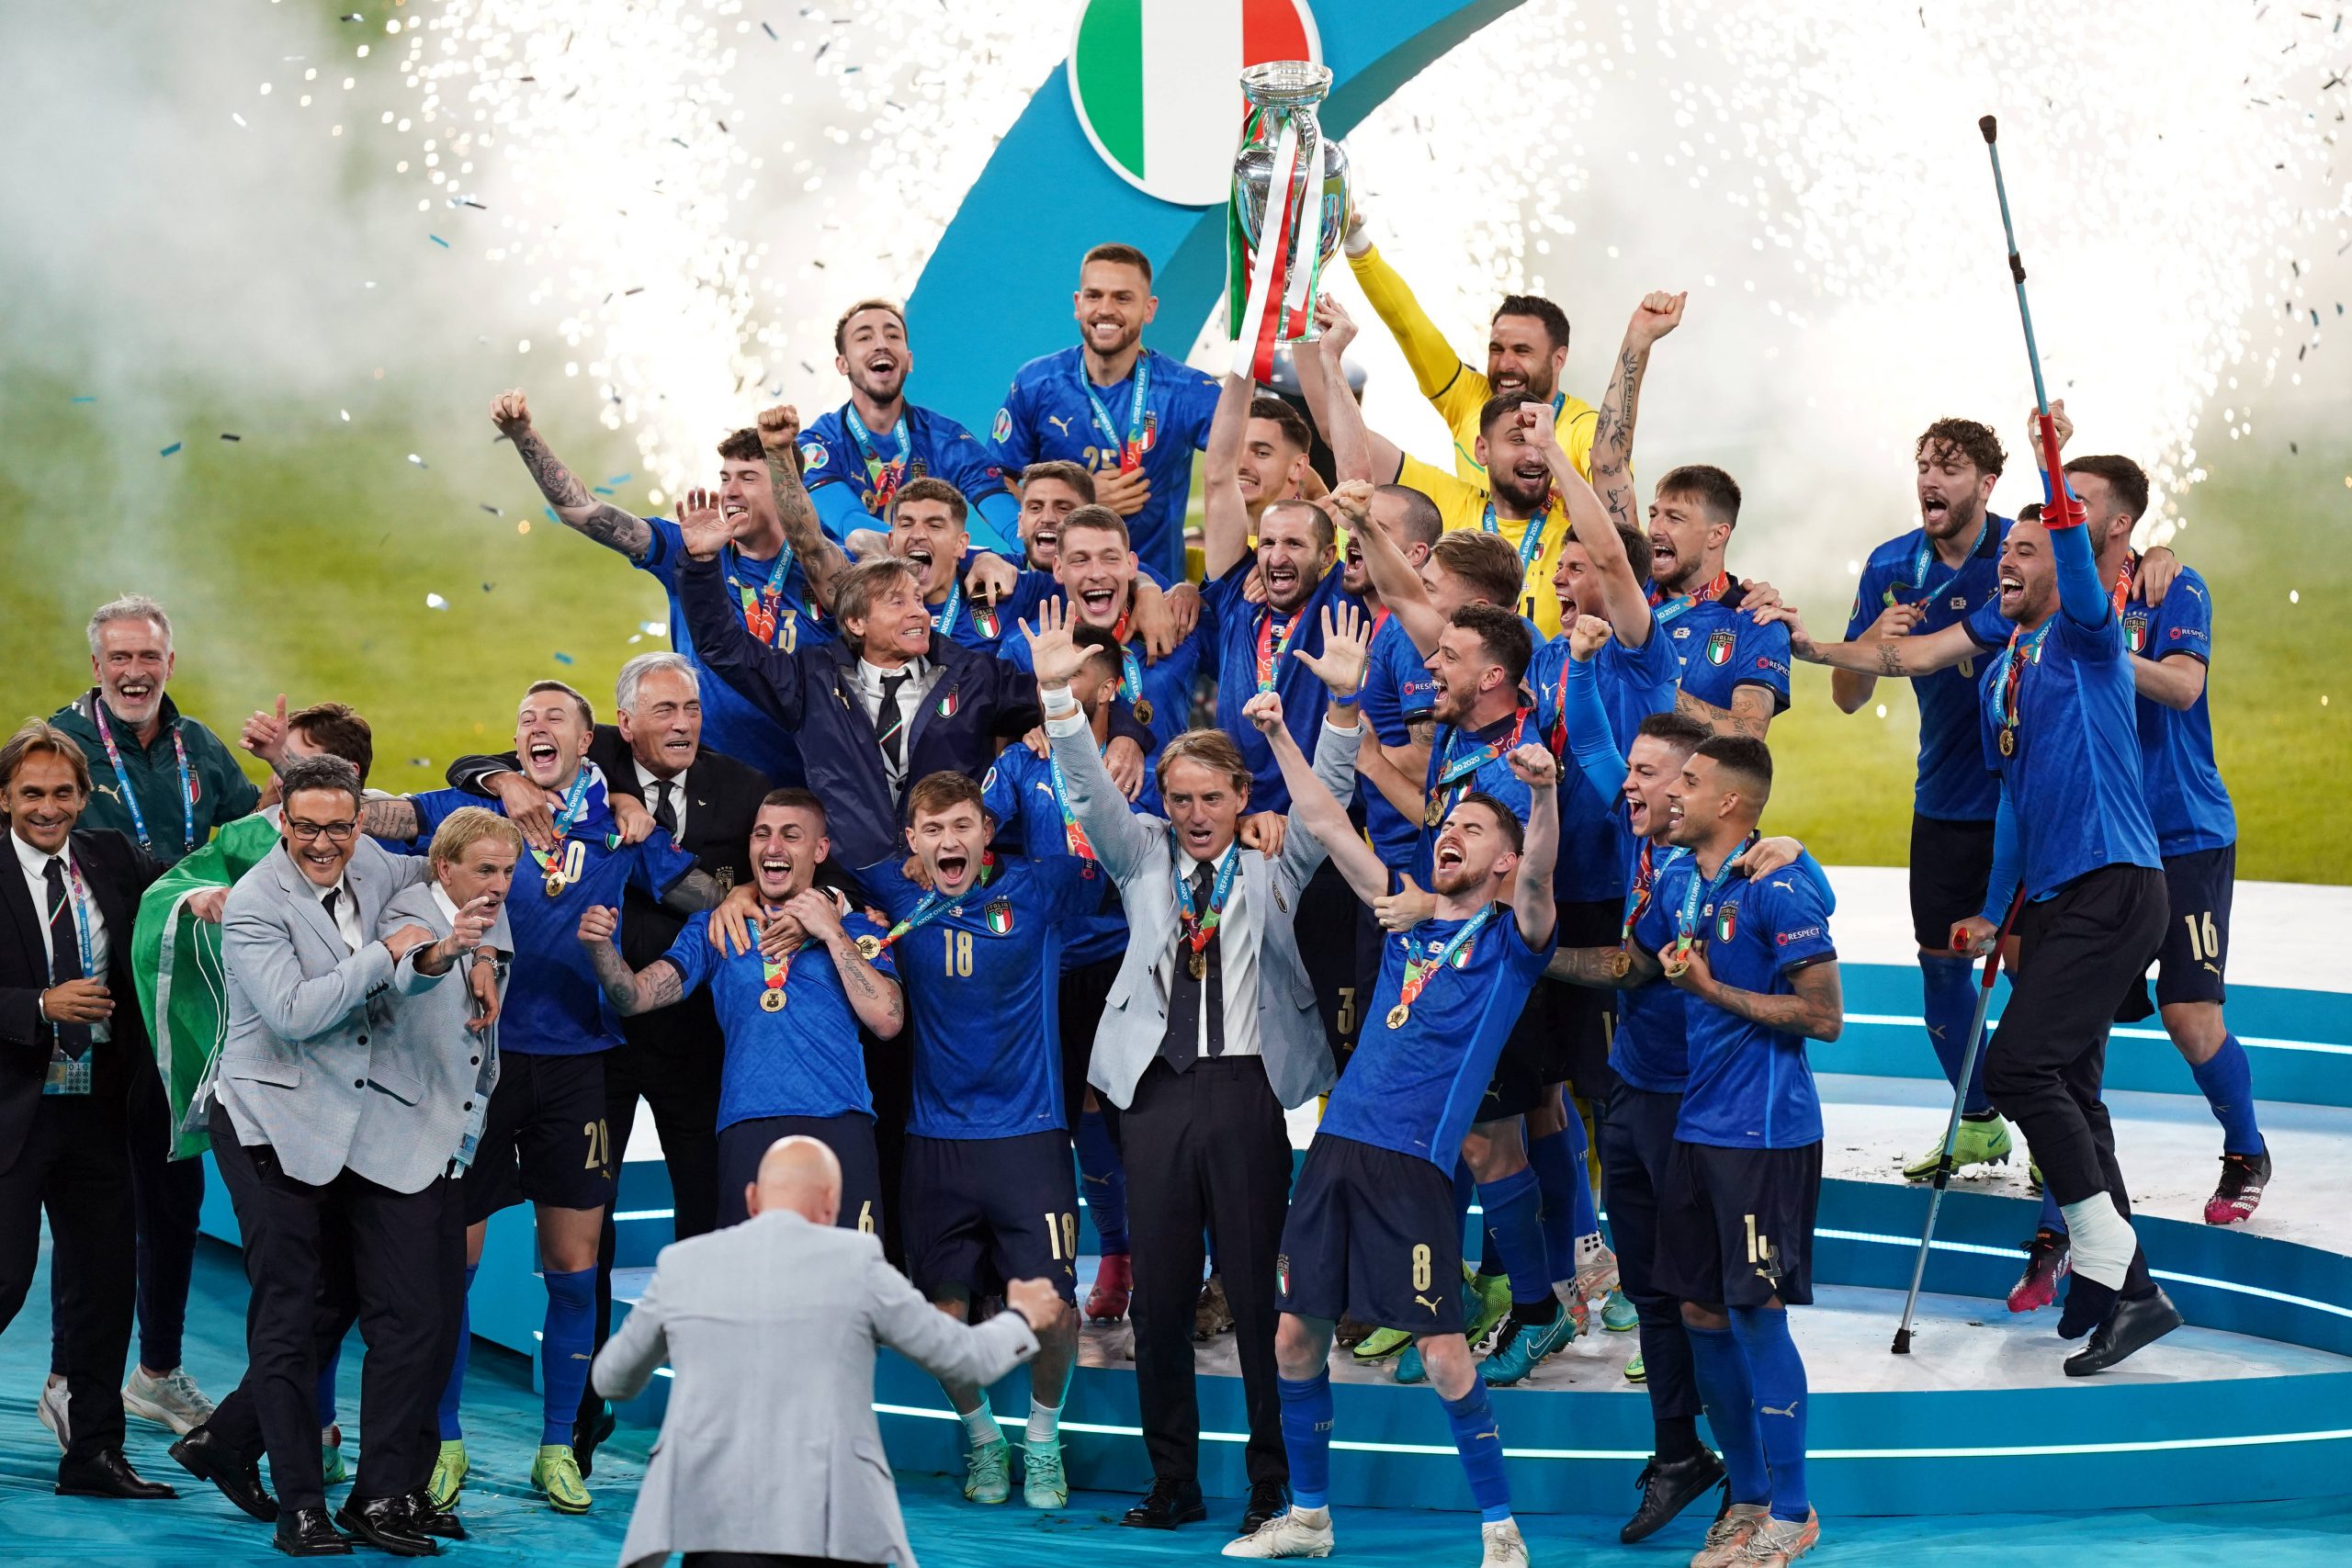 Italien bejubelt den großen EM-Triumph auf dem Siegerpodest in Wembley.